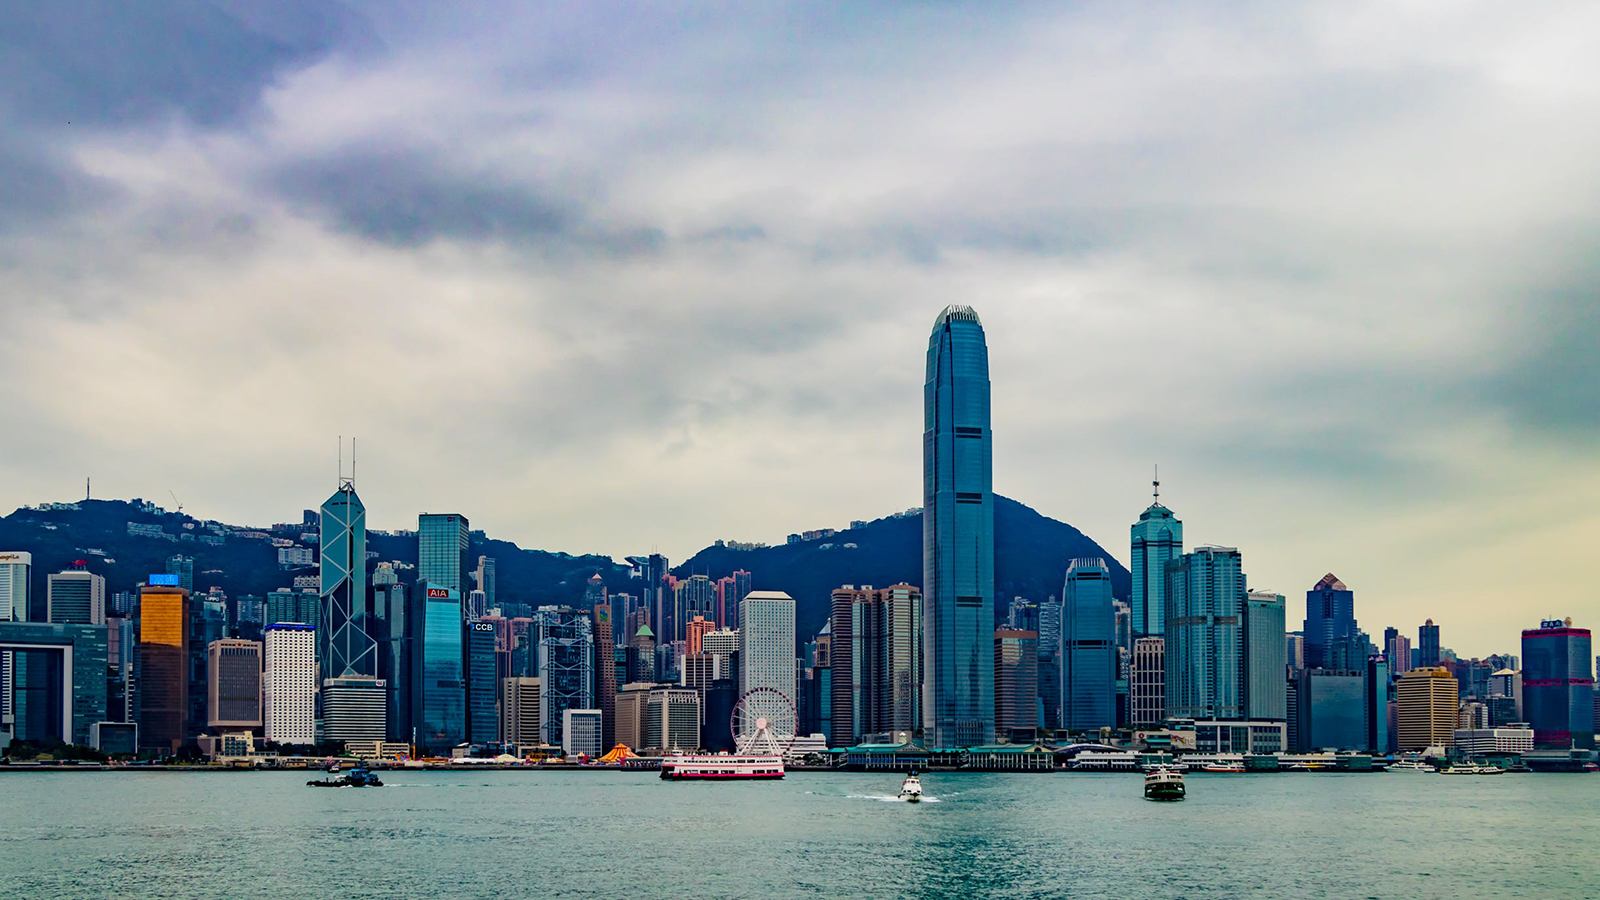 ‪هونغ كونغ من بين الوجهات المثالية لهذه السنة فهي تمنح زائريها فرصة الاستمتاع والاسترخاء‬ (بيكسلز)